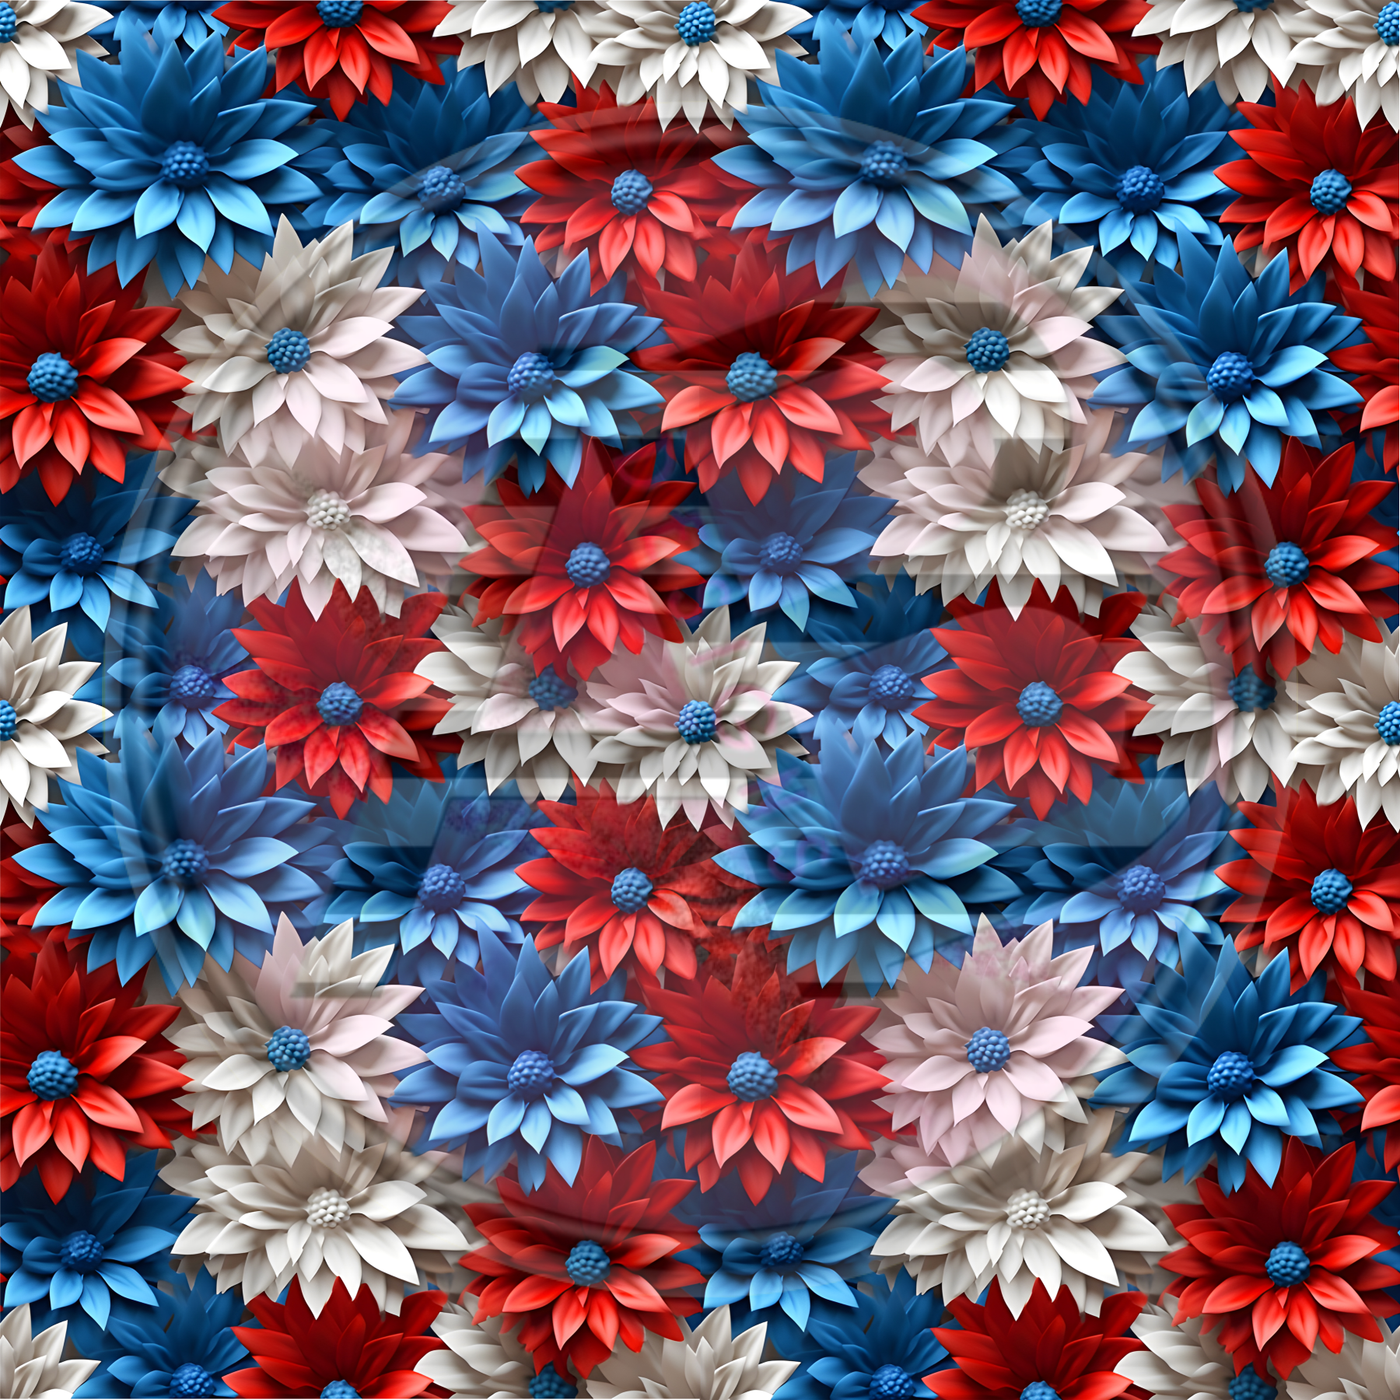 Adhesive Patterned Vinyl - Patriotic Floral 10